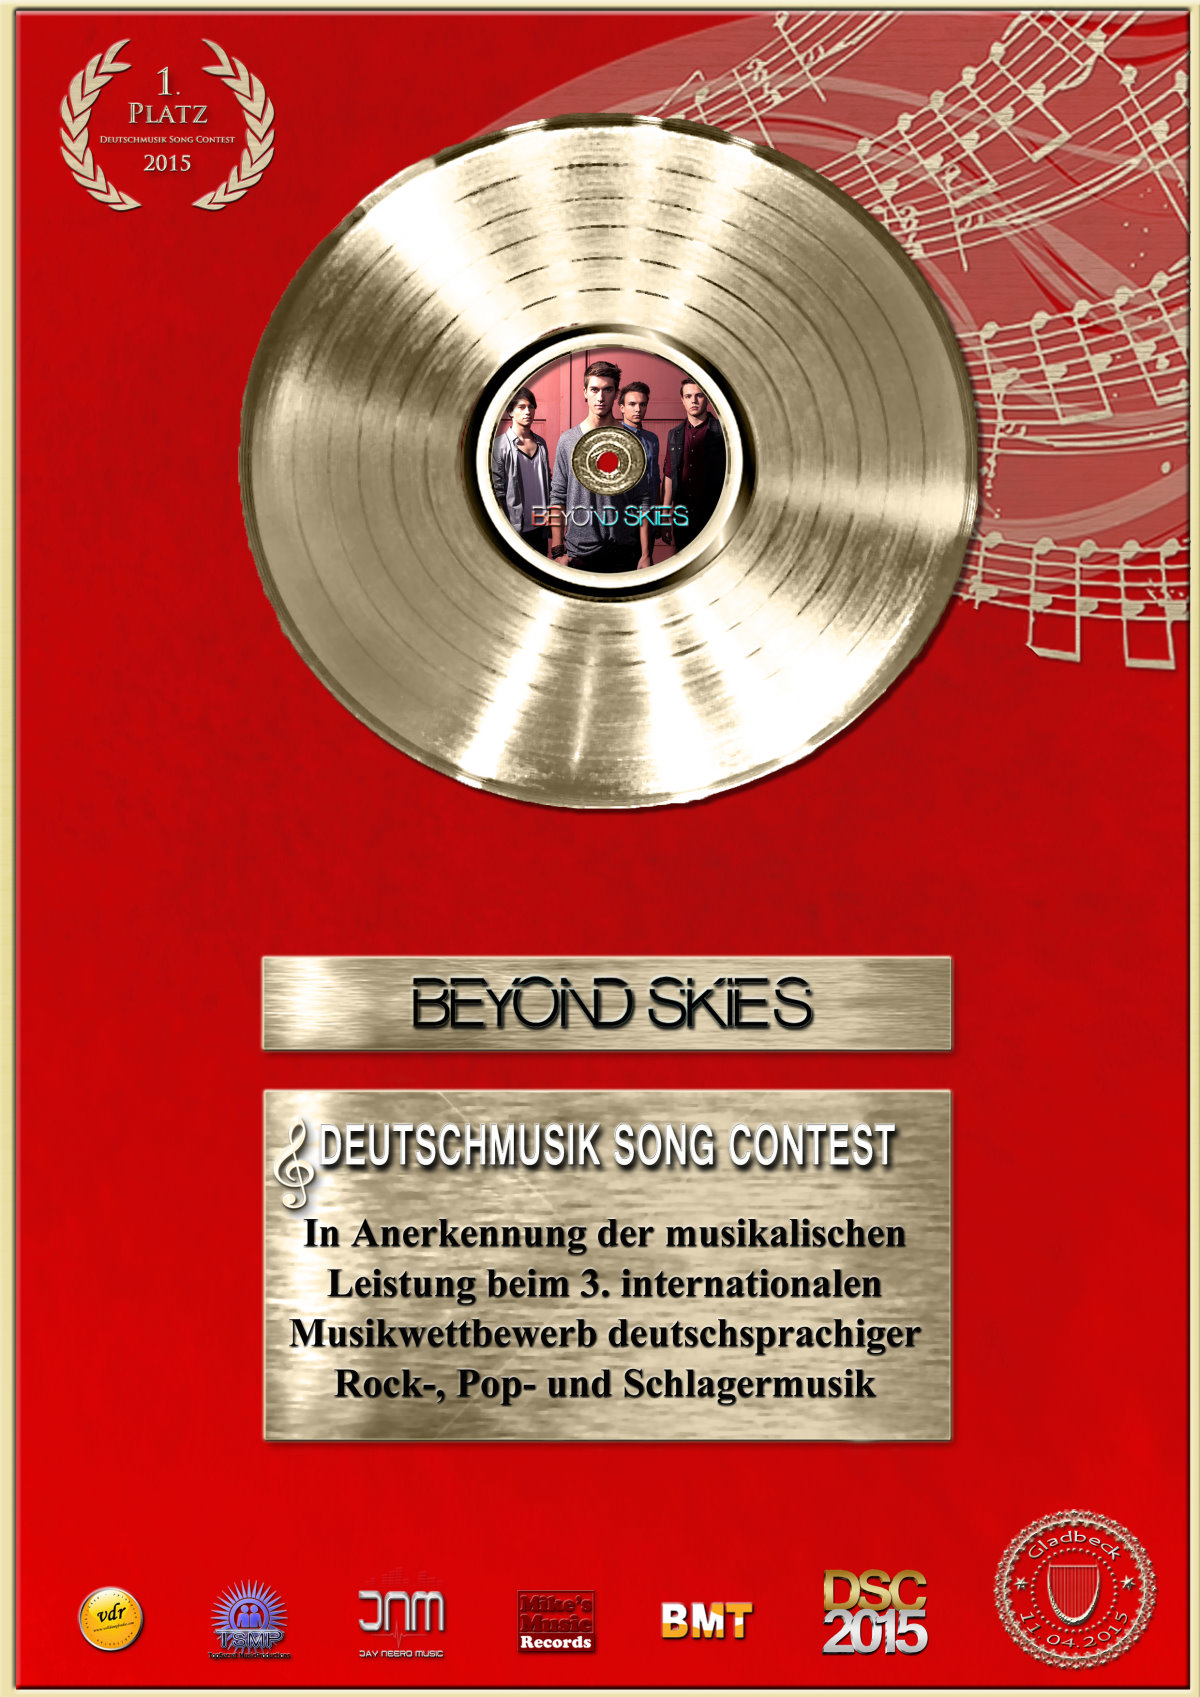 TV Infos & TV News @ TV-Info-247.de | Deutschmusik-Song-Contest-Award 